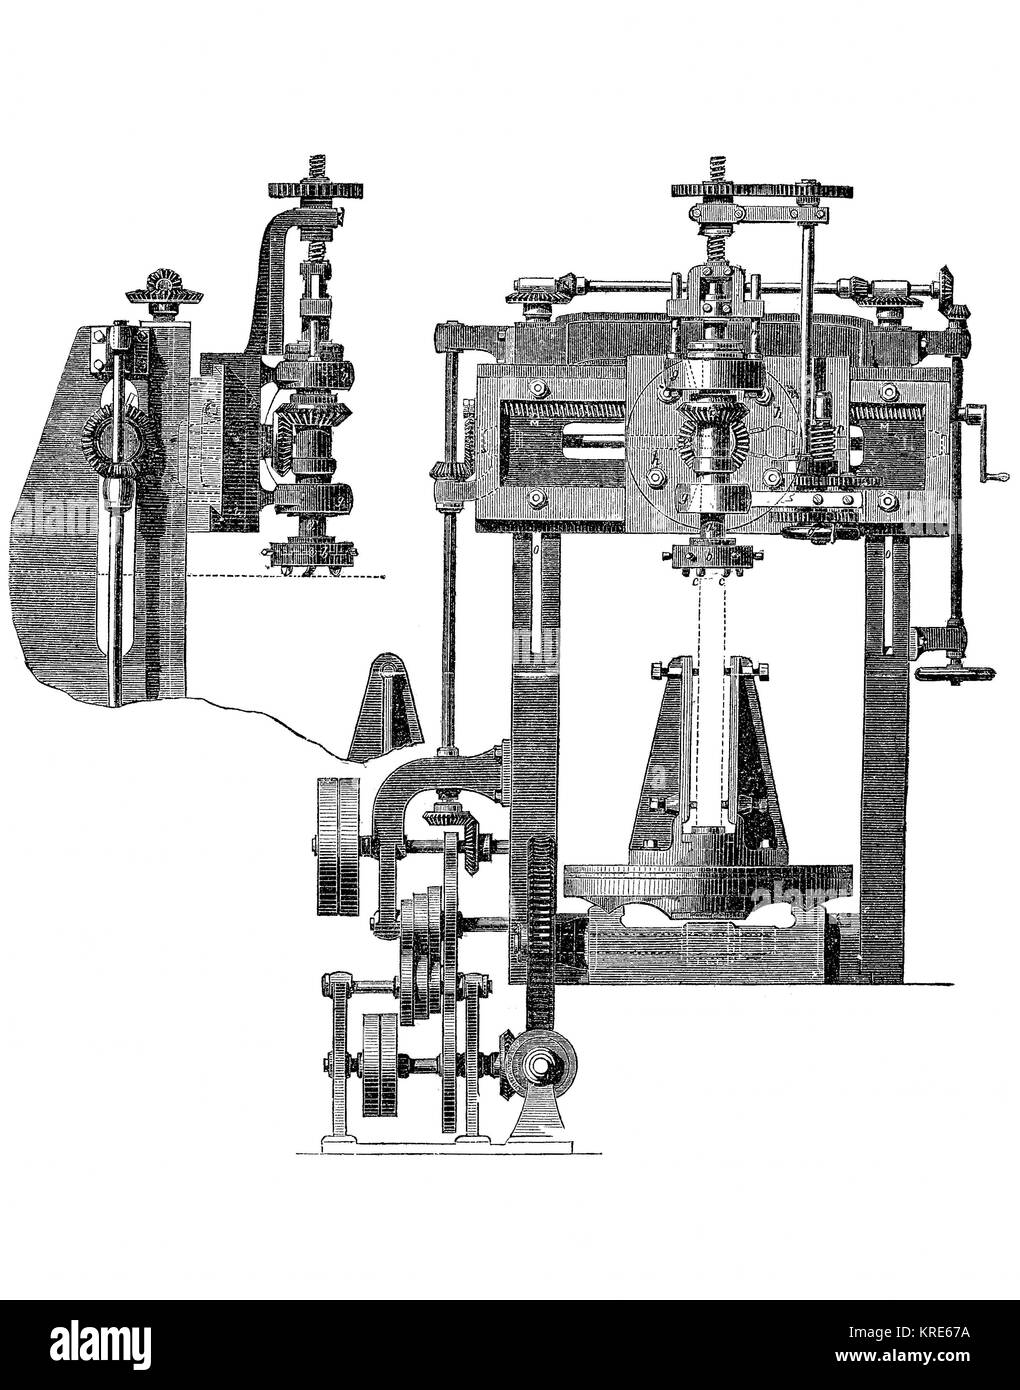 Frais, Fräsmaschine für die Bearbeitung von gebogenen Blechen, industrielle Produkt aus dem Jahr 1880 digital verbesserte Reproduktion eines Holzschnitt her Stockfoto